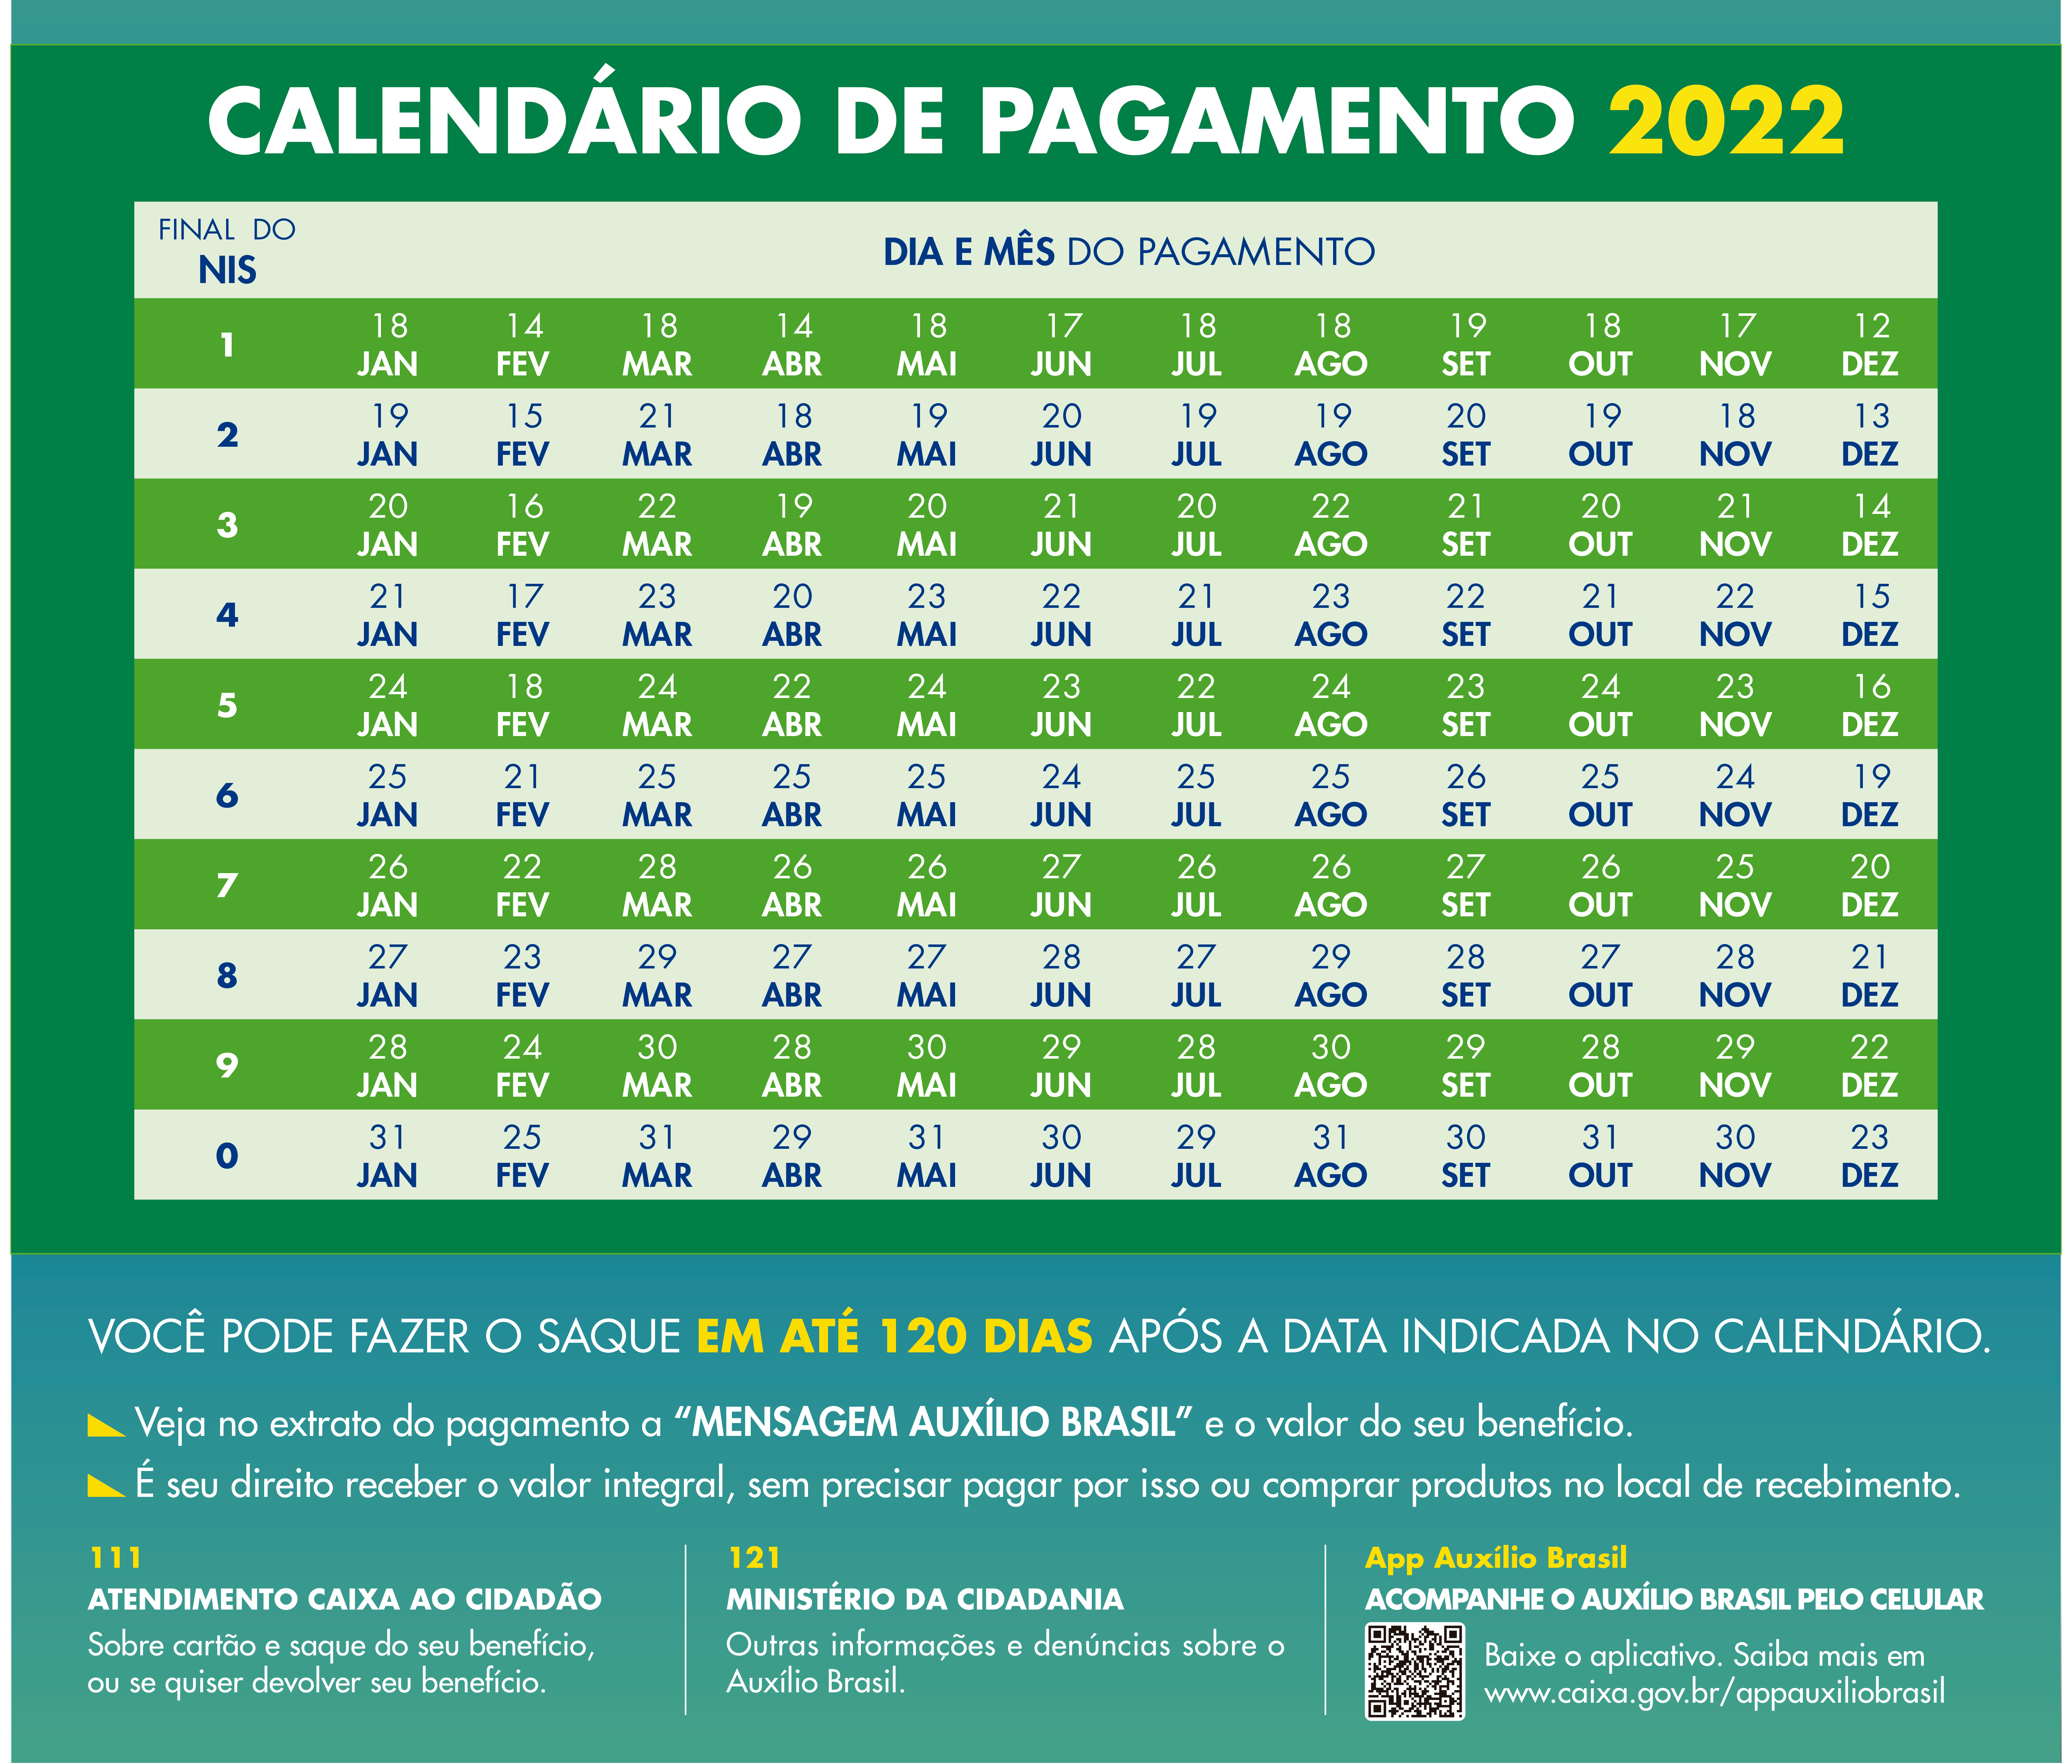 Calendário de pagamentos do Auxílio Brasil